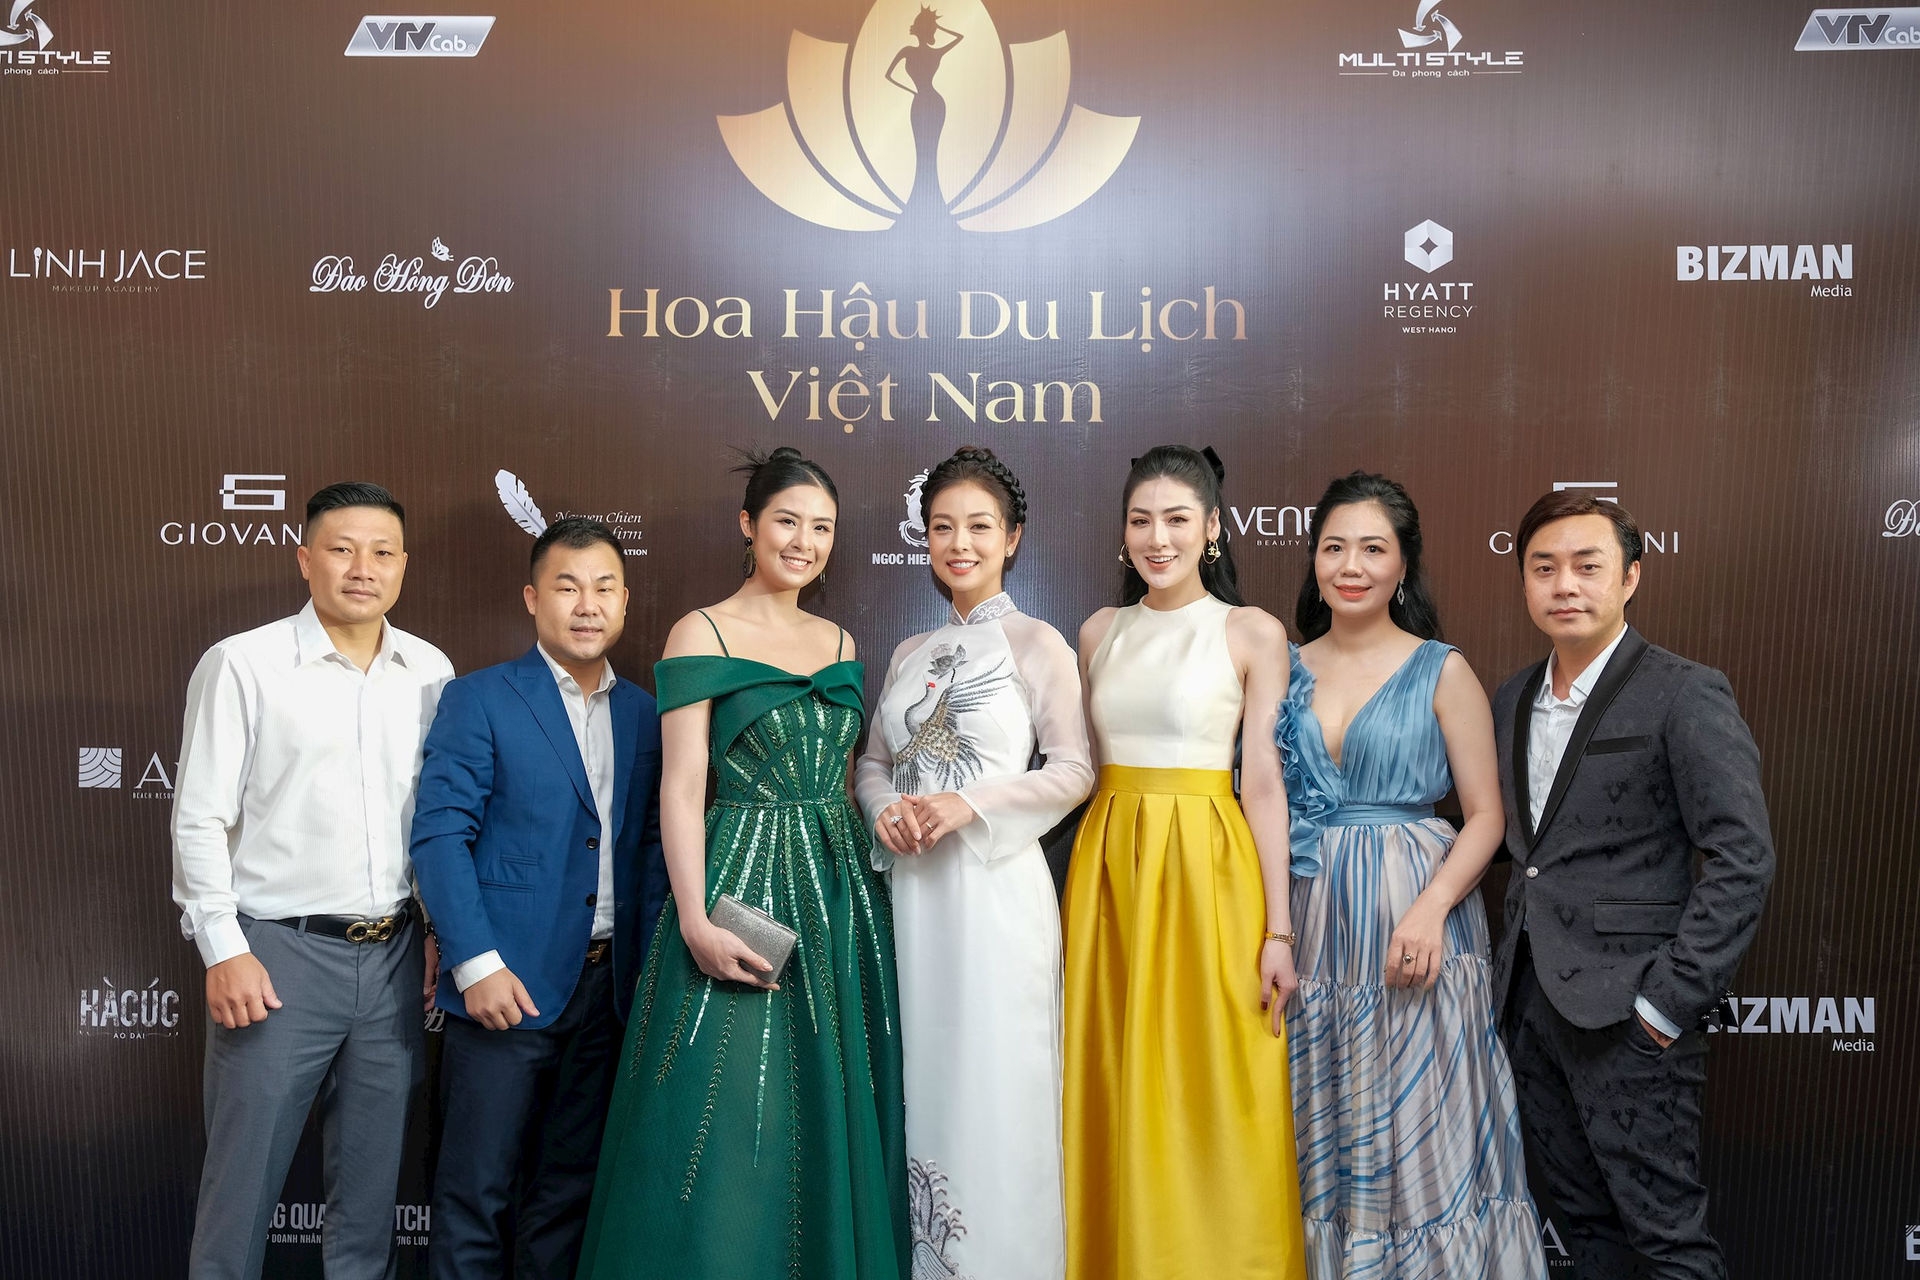 Chính thức khởi động cuộc thi Hoa hậu du lịch Việt Nam 2022